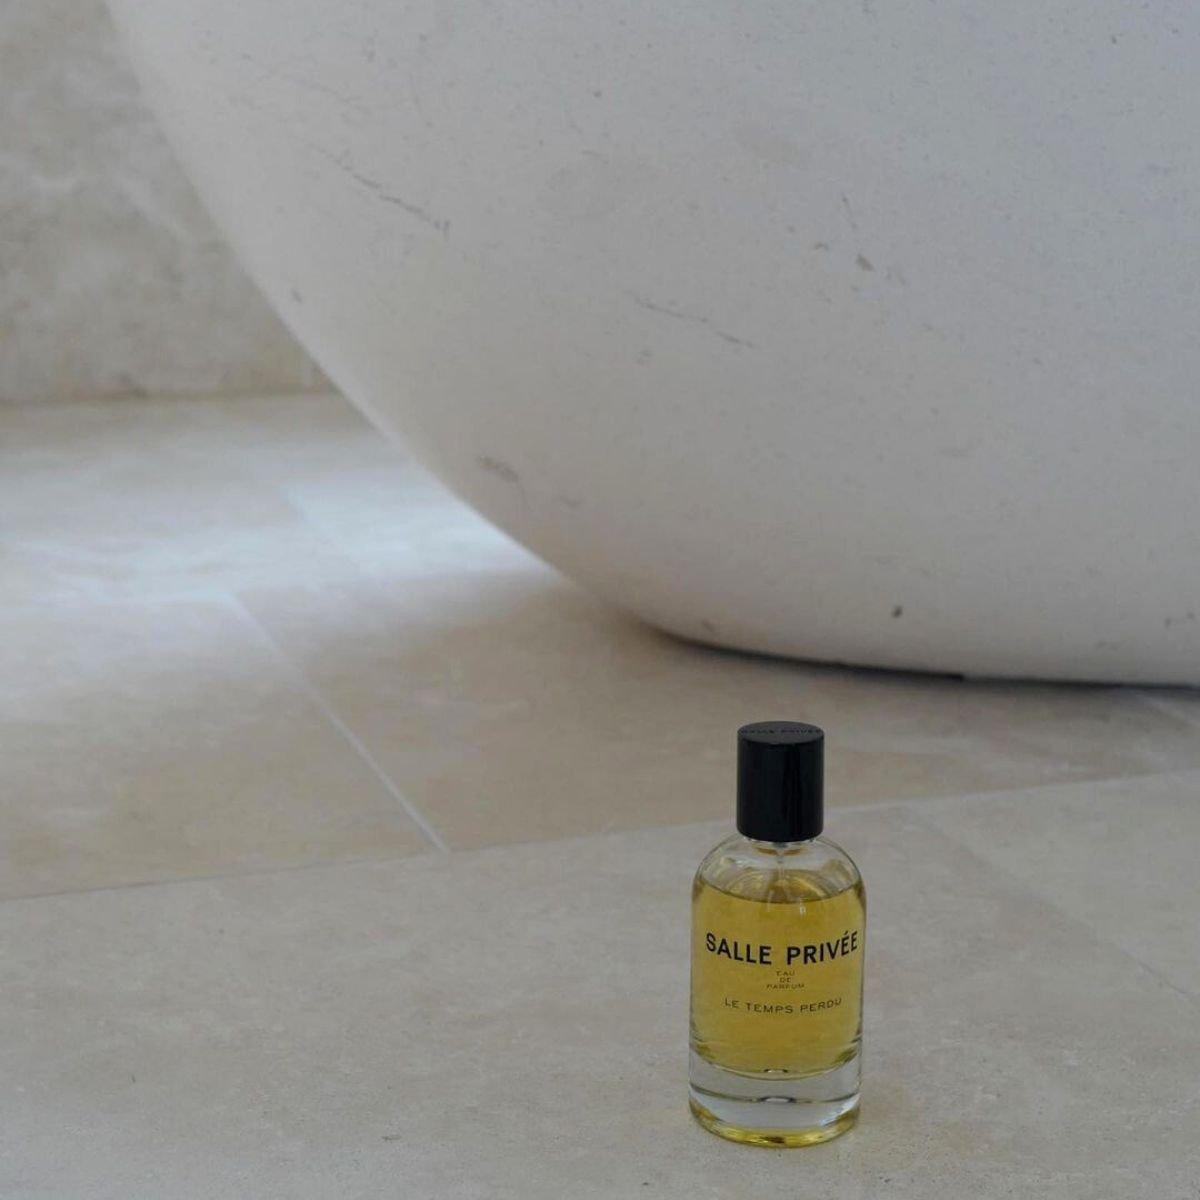 Image of Le temps Perdu eau de parfum 100 ml by the perfume brand Salle Privee